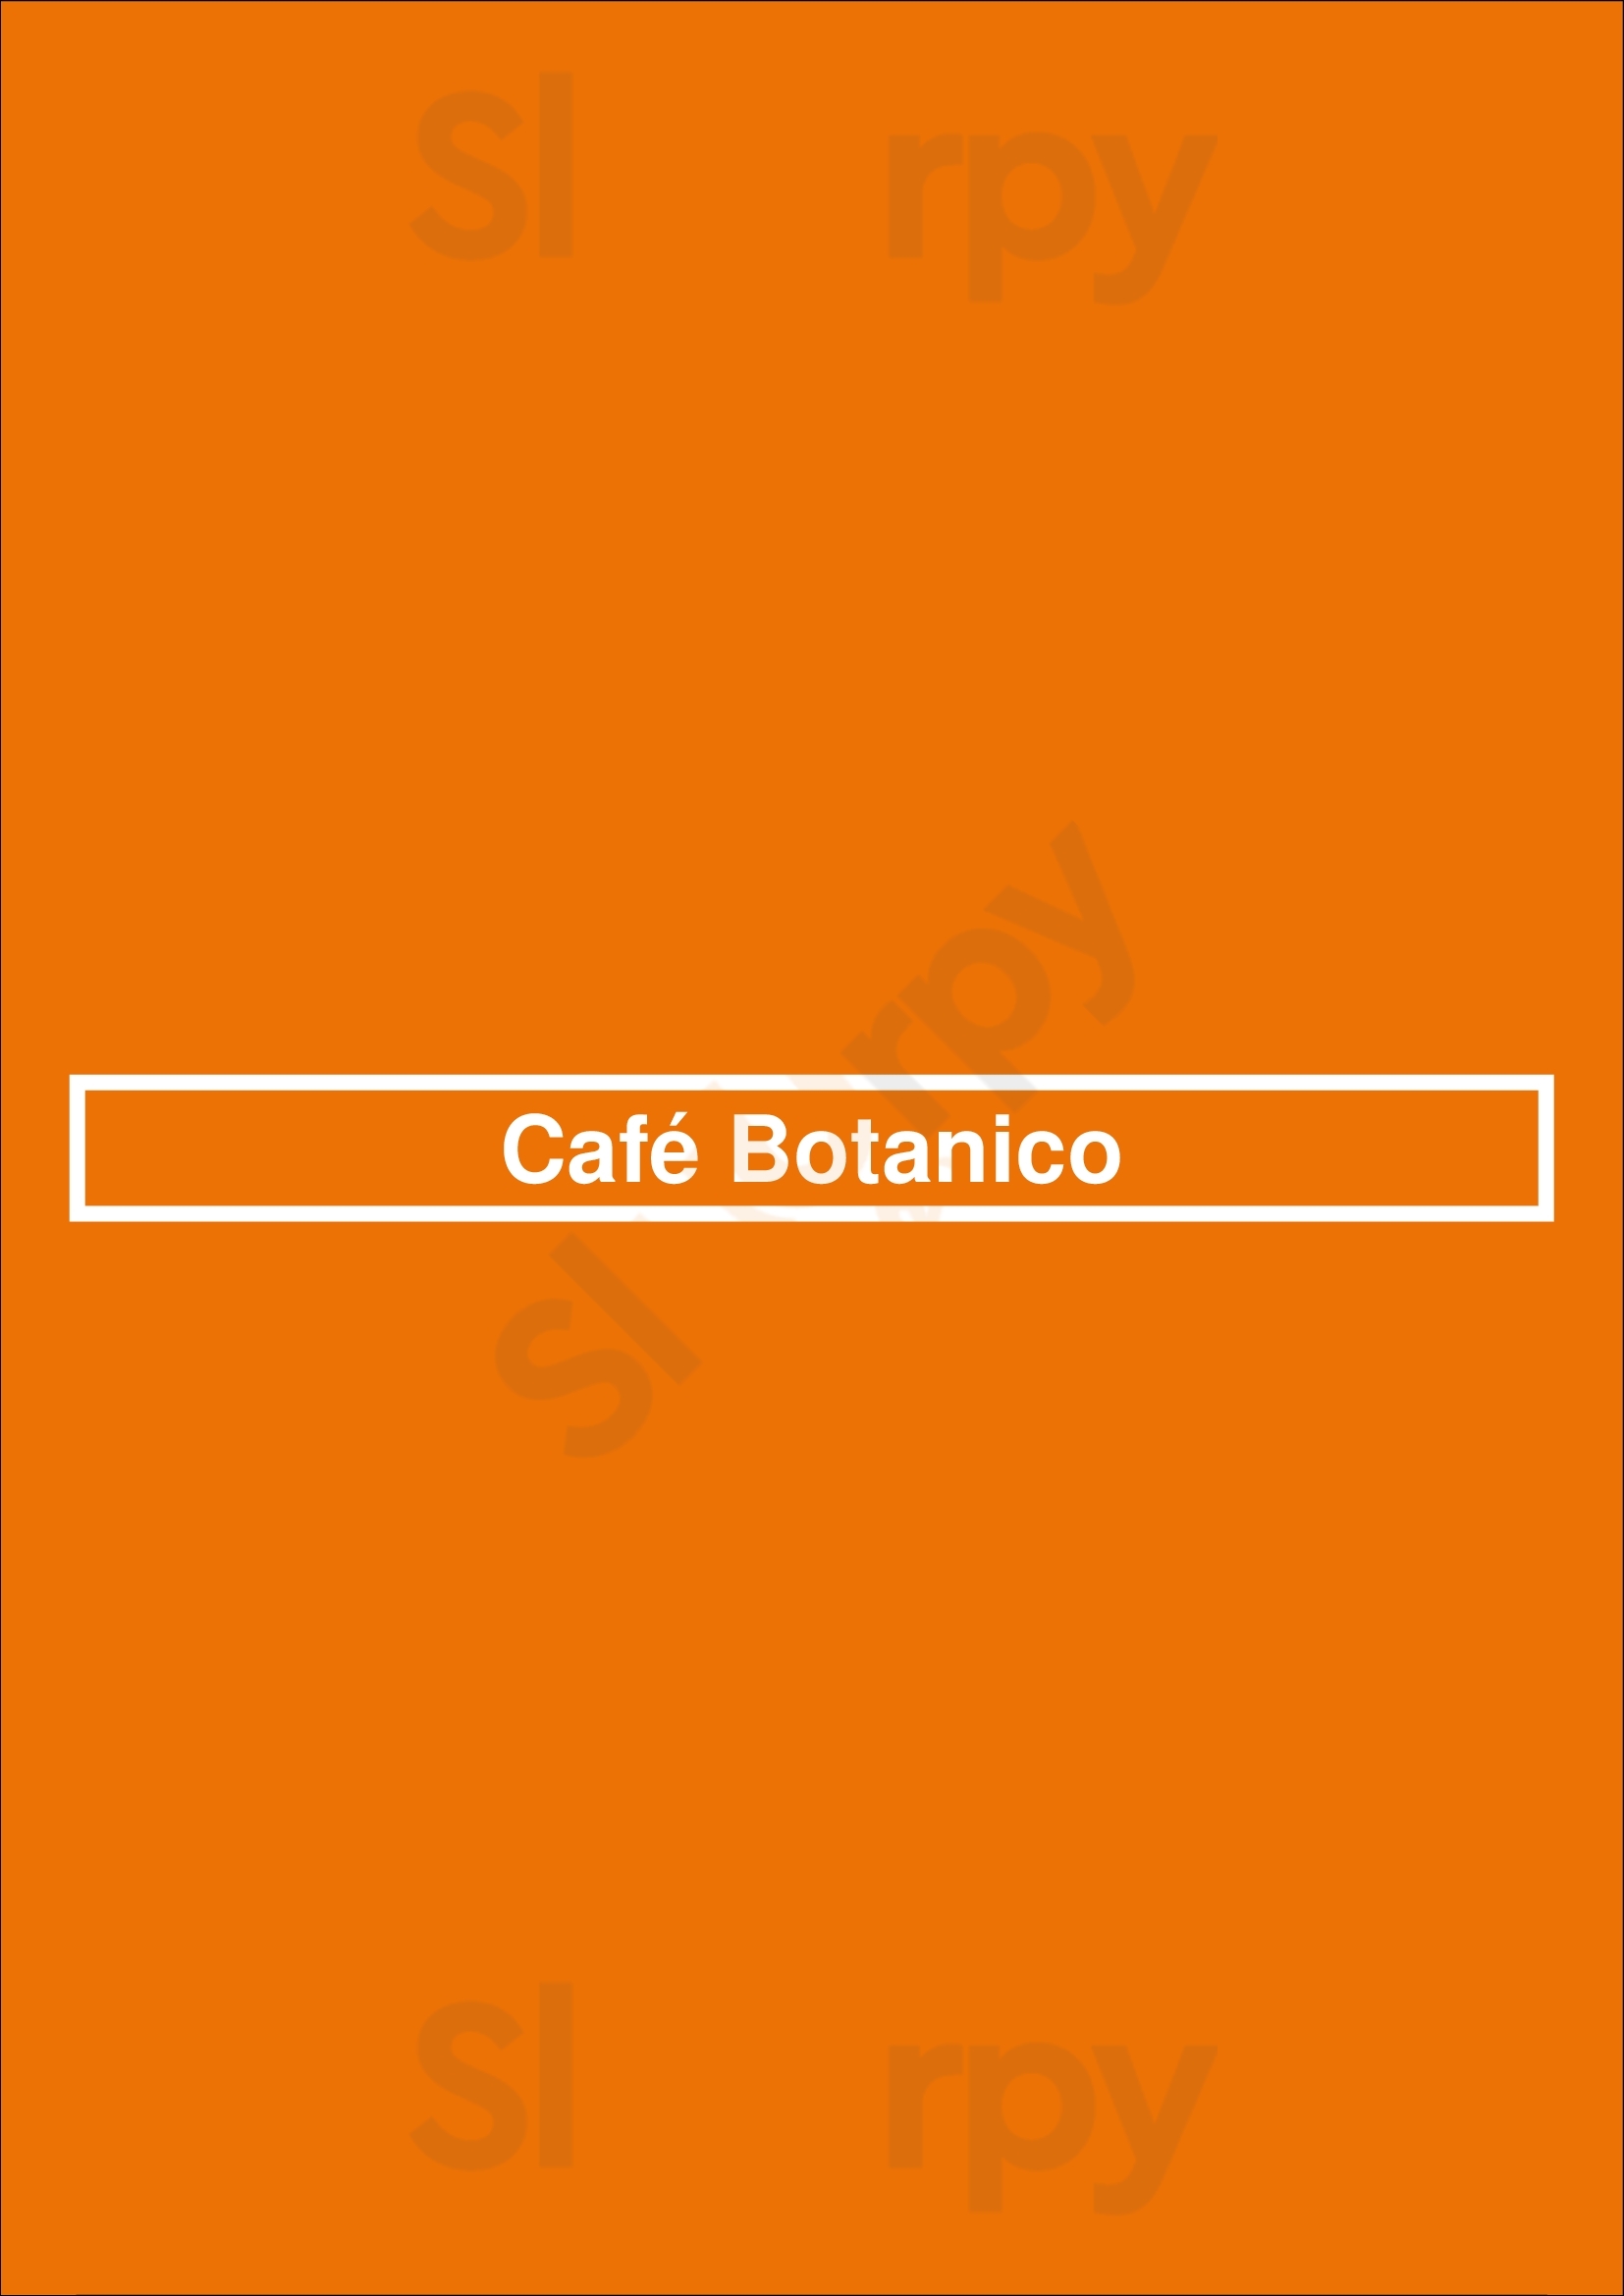 Café Botanico Berlin Menu - 1